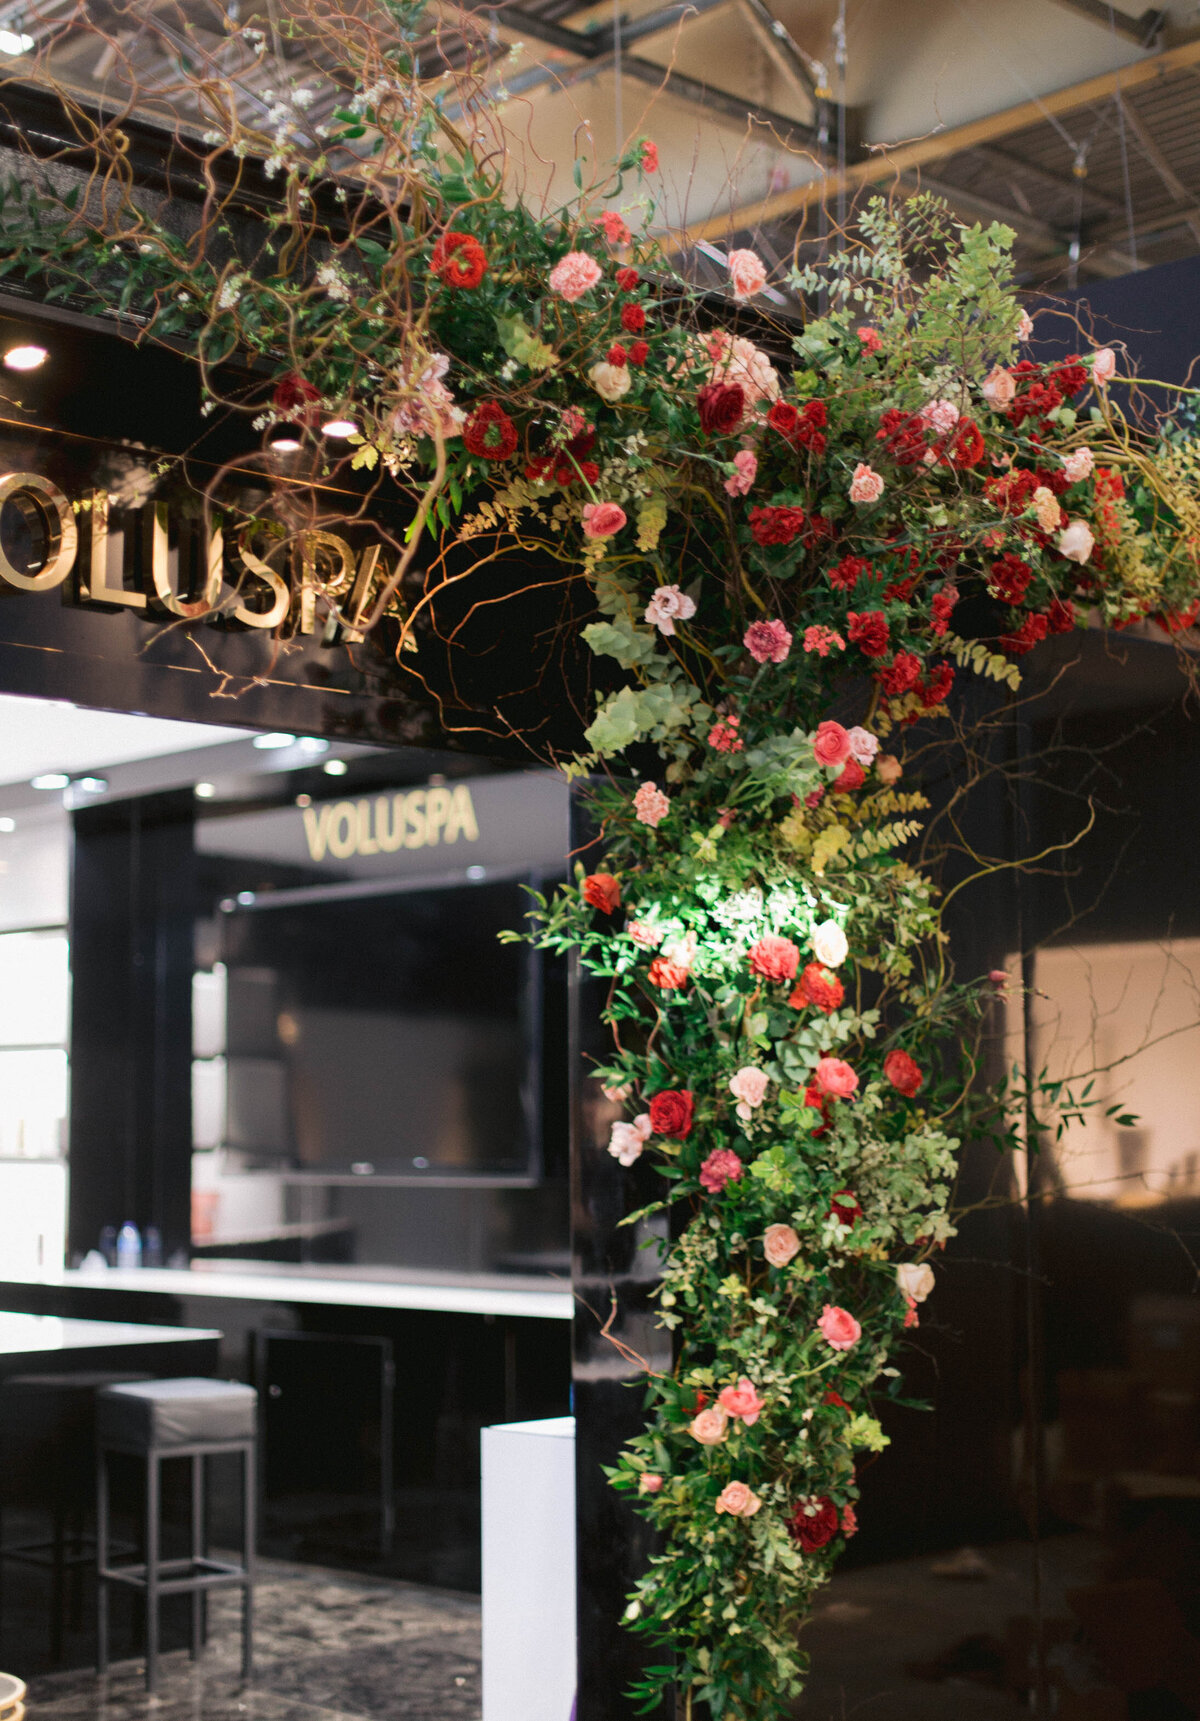 Maison_Objet_flower_decoration_florist-1-8